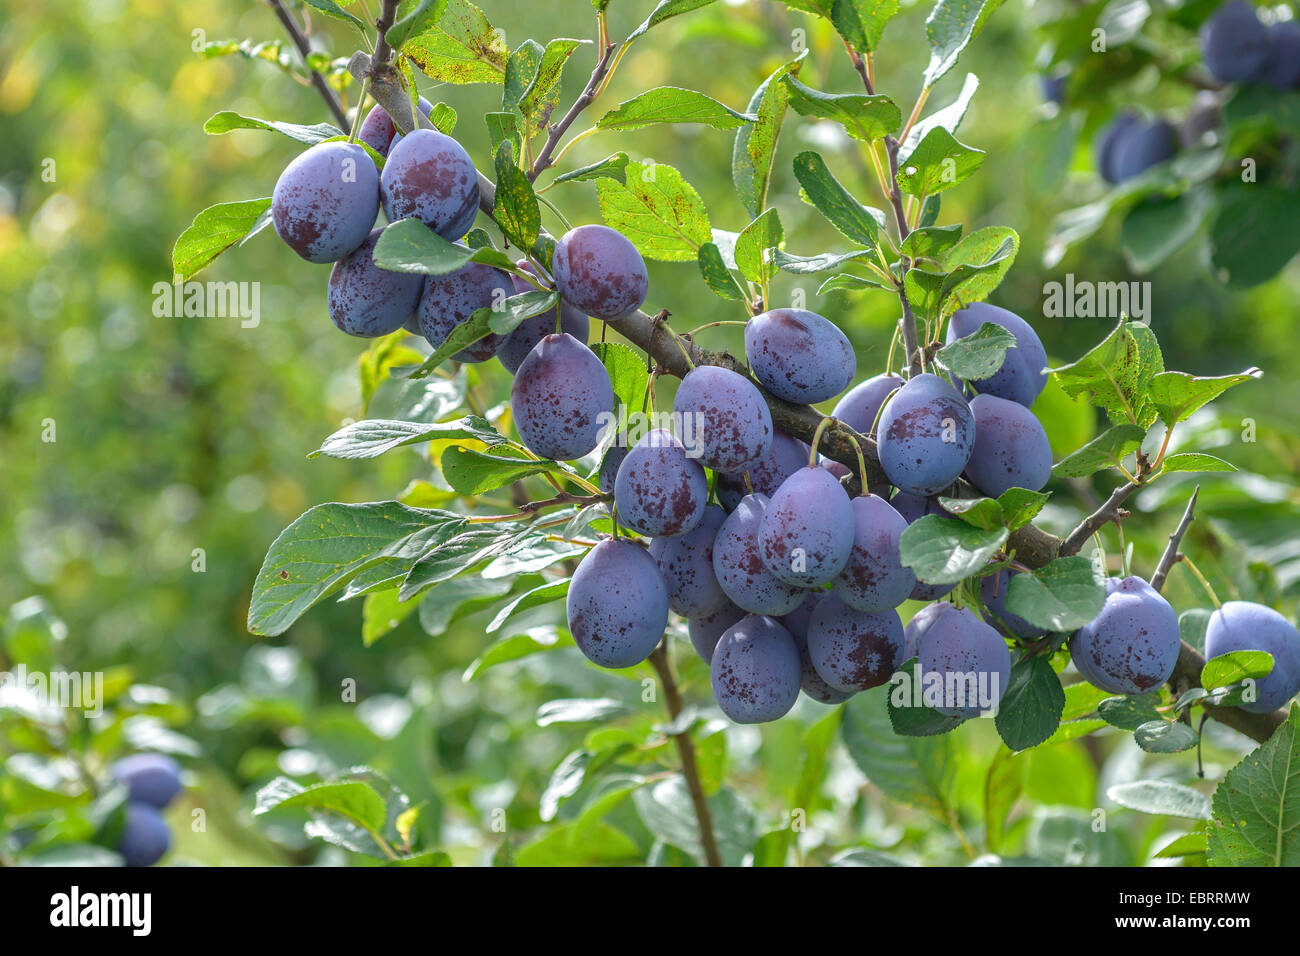 European plum (Prunus domestica 'Topper', Prunus domestica Topper), Plums on a tree, cultivar Topper Stock Photo